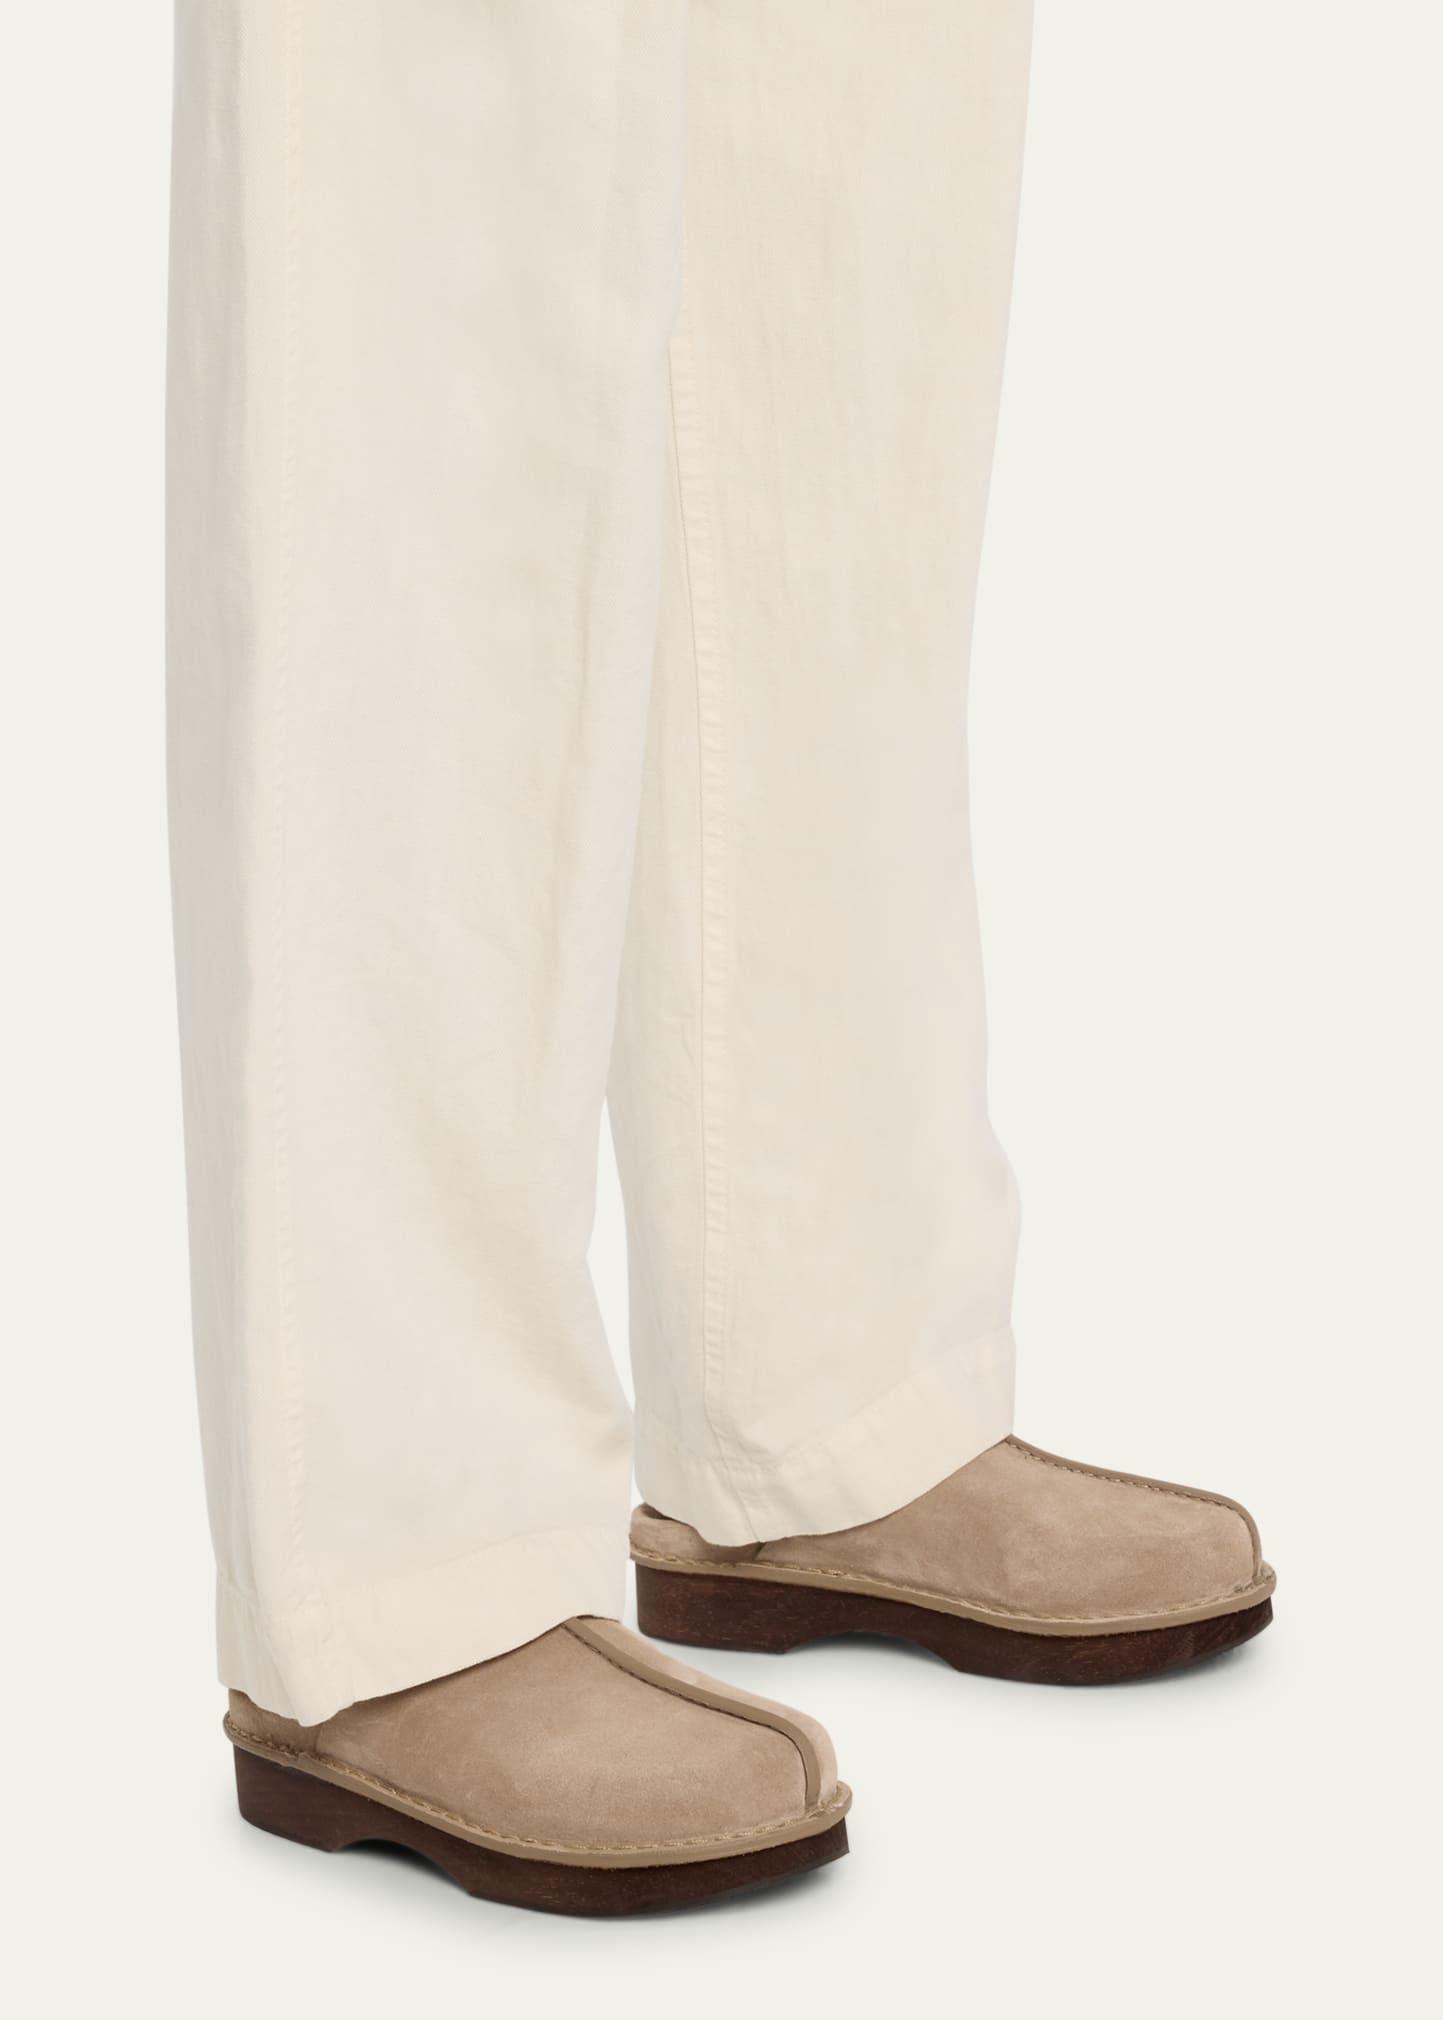 Brunello Cucinelli Linen Cargo Shorts Light Tan, $645, Bergdorf Goodman